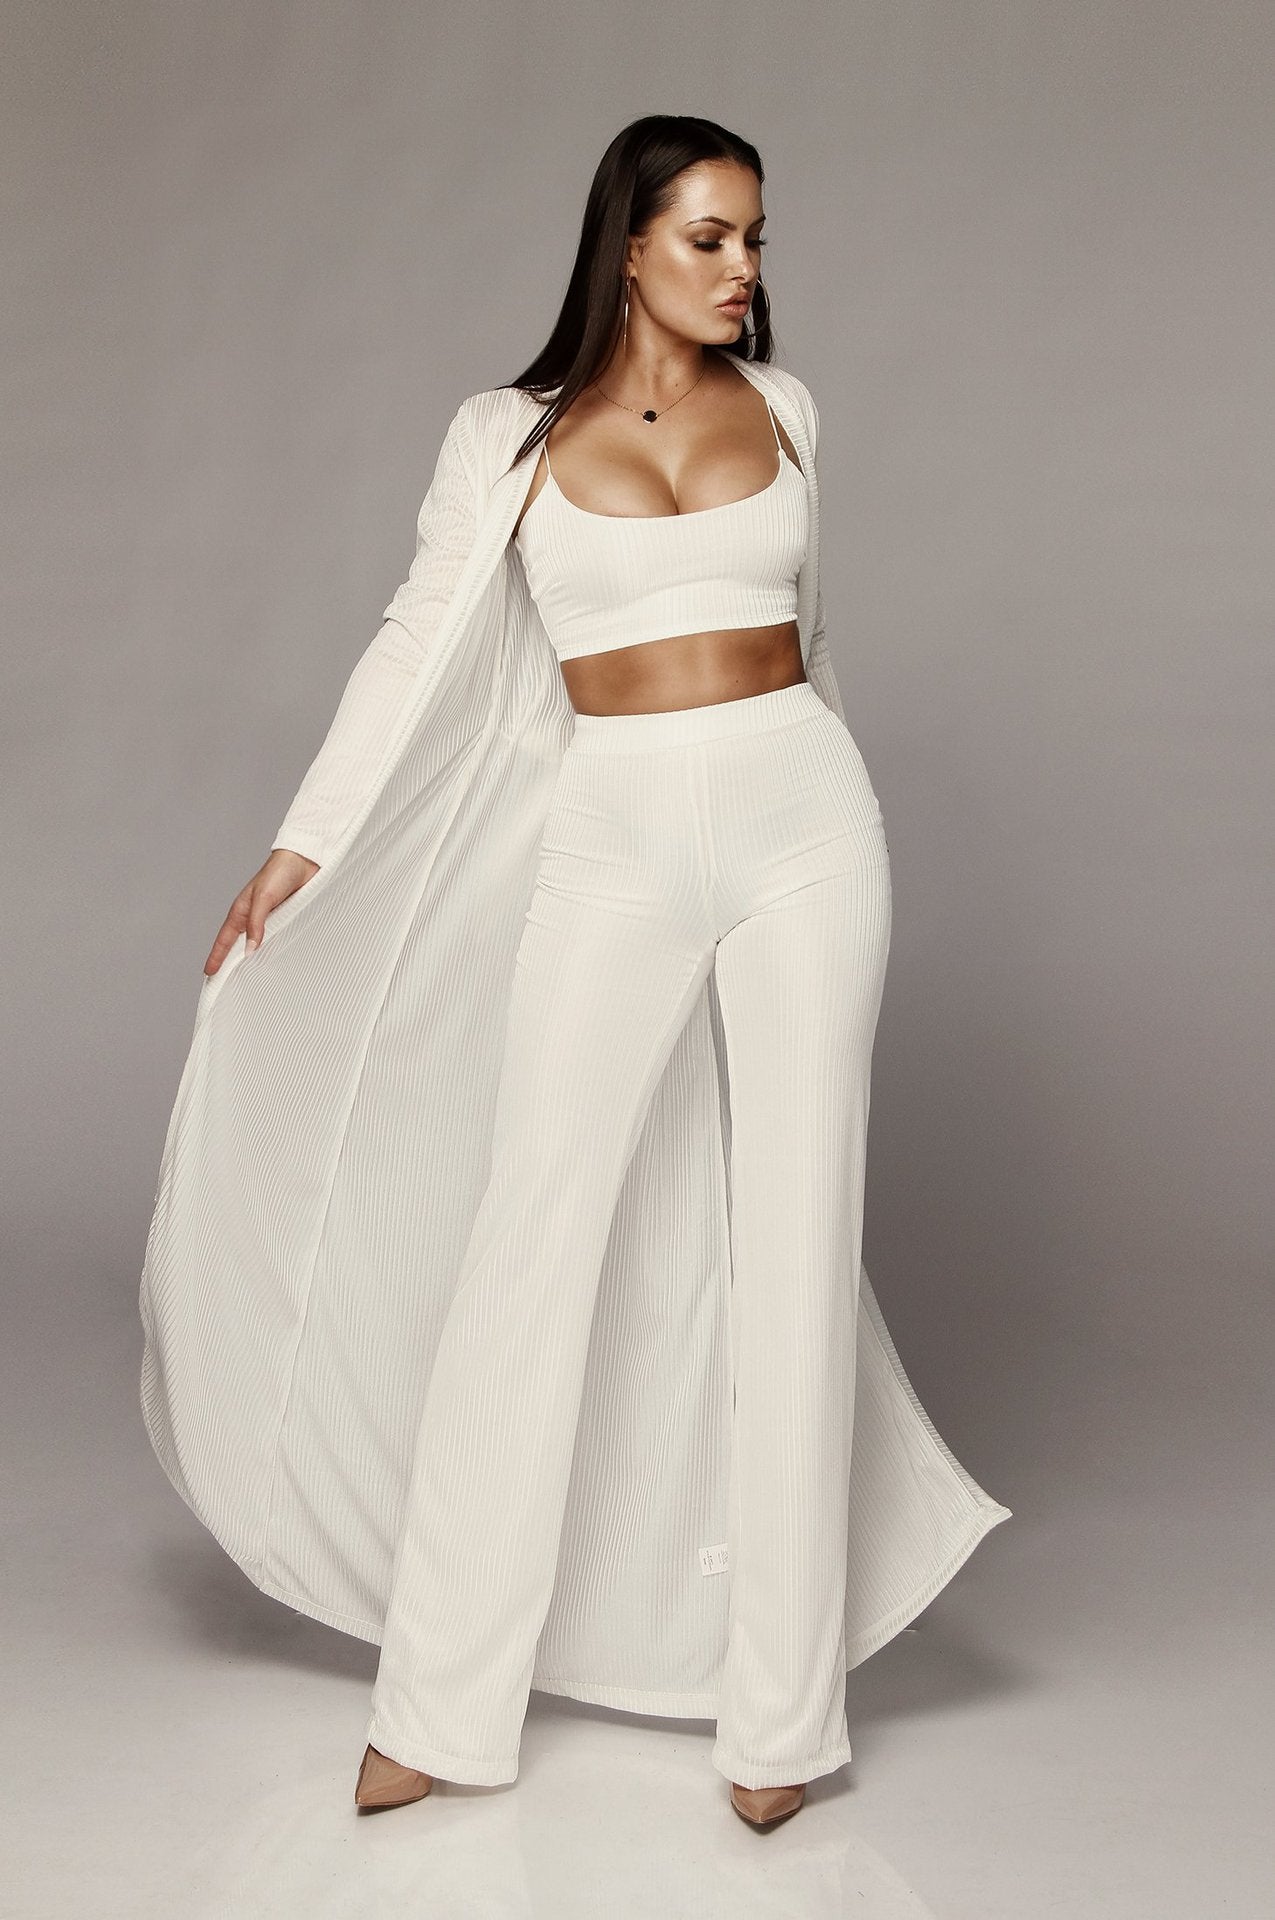 White Long Cloak Strapless Bodysuit Set